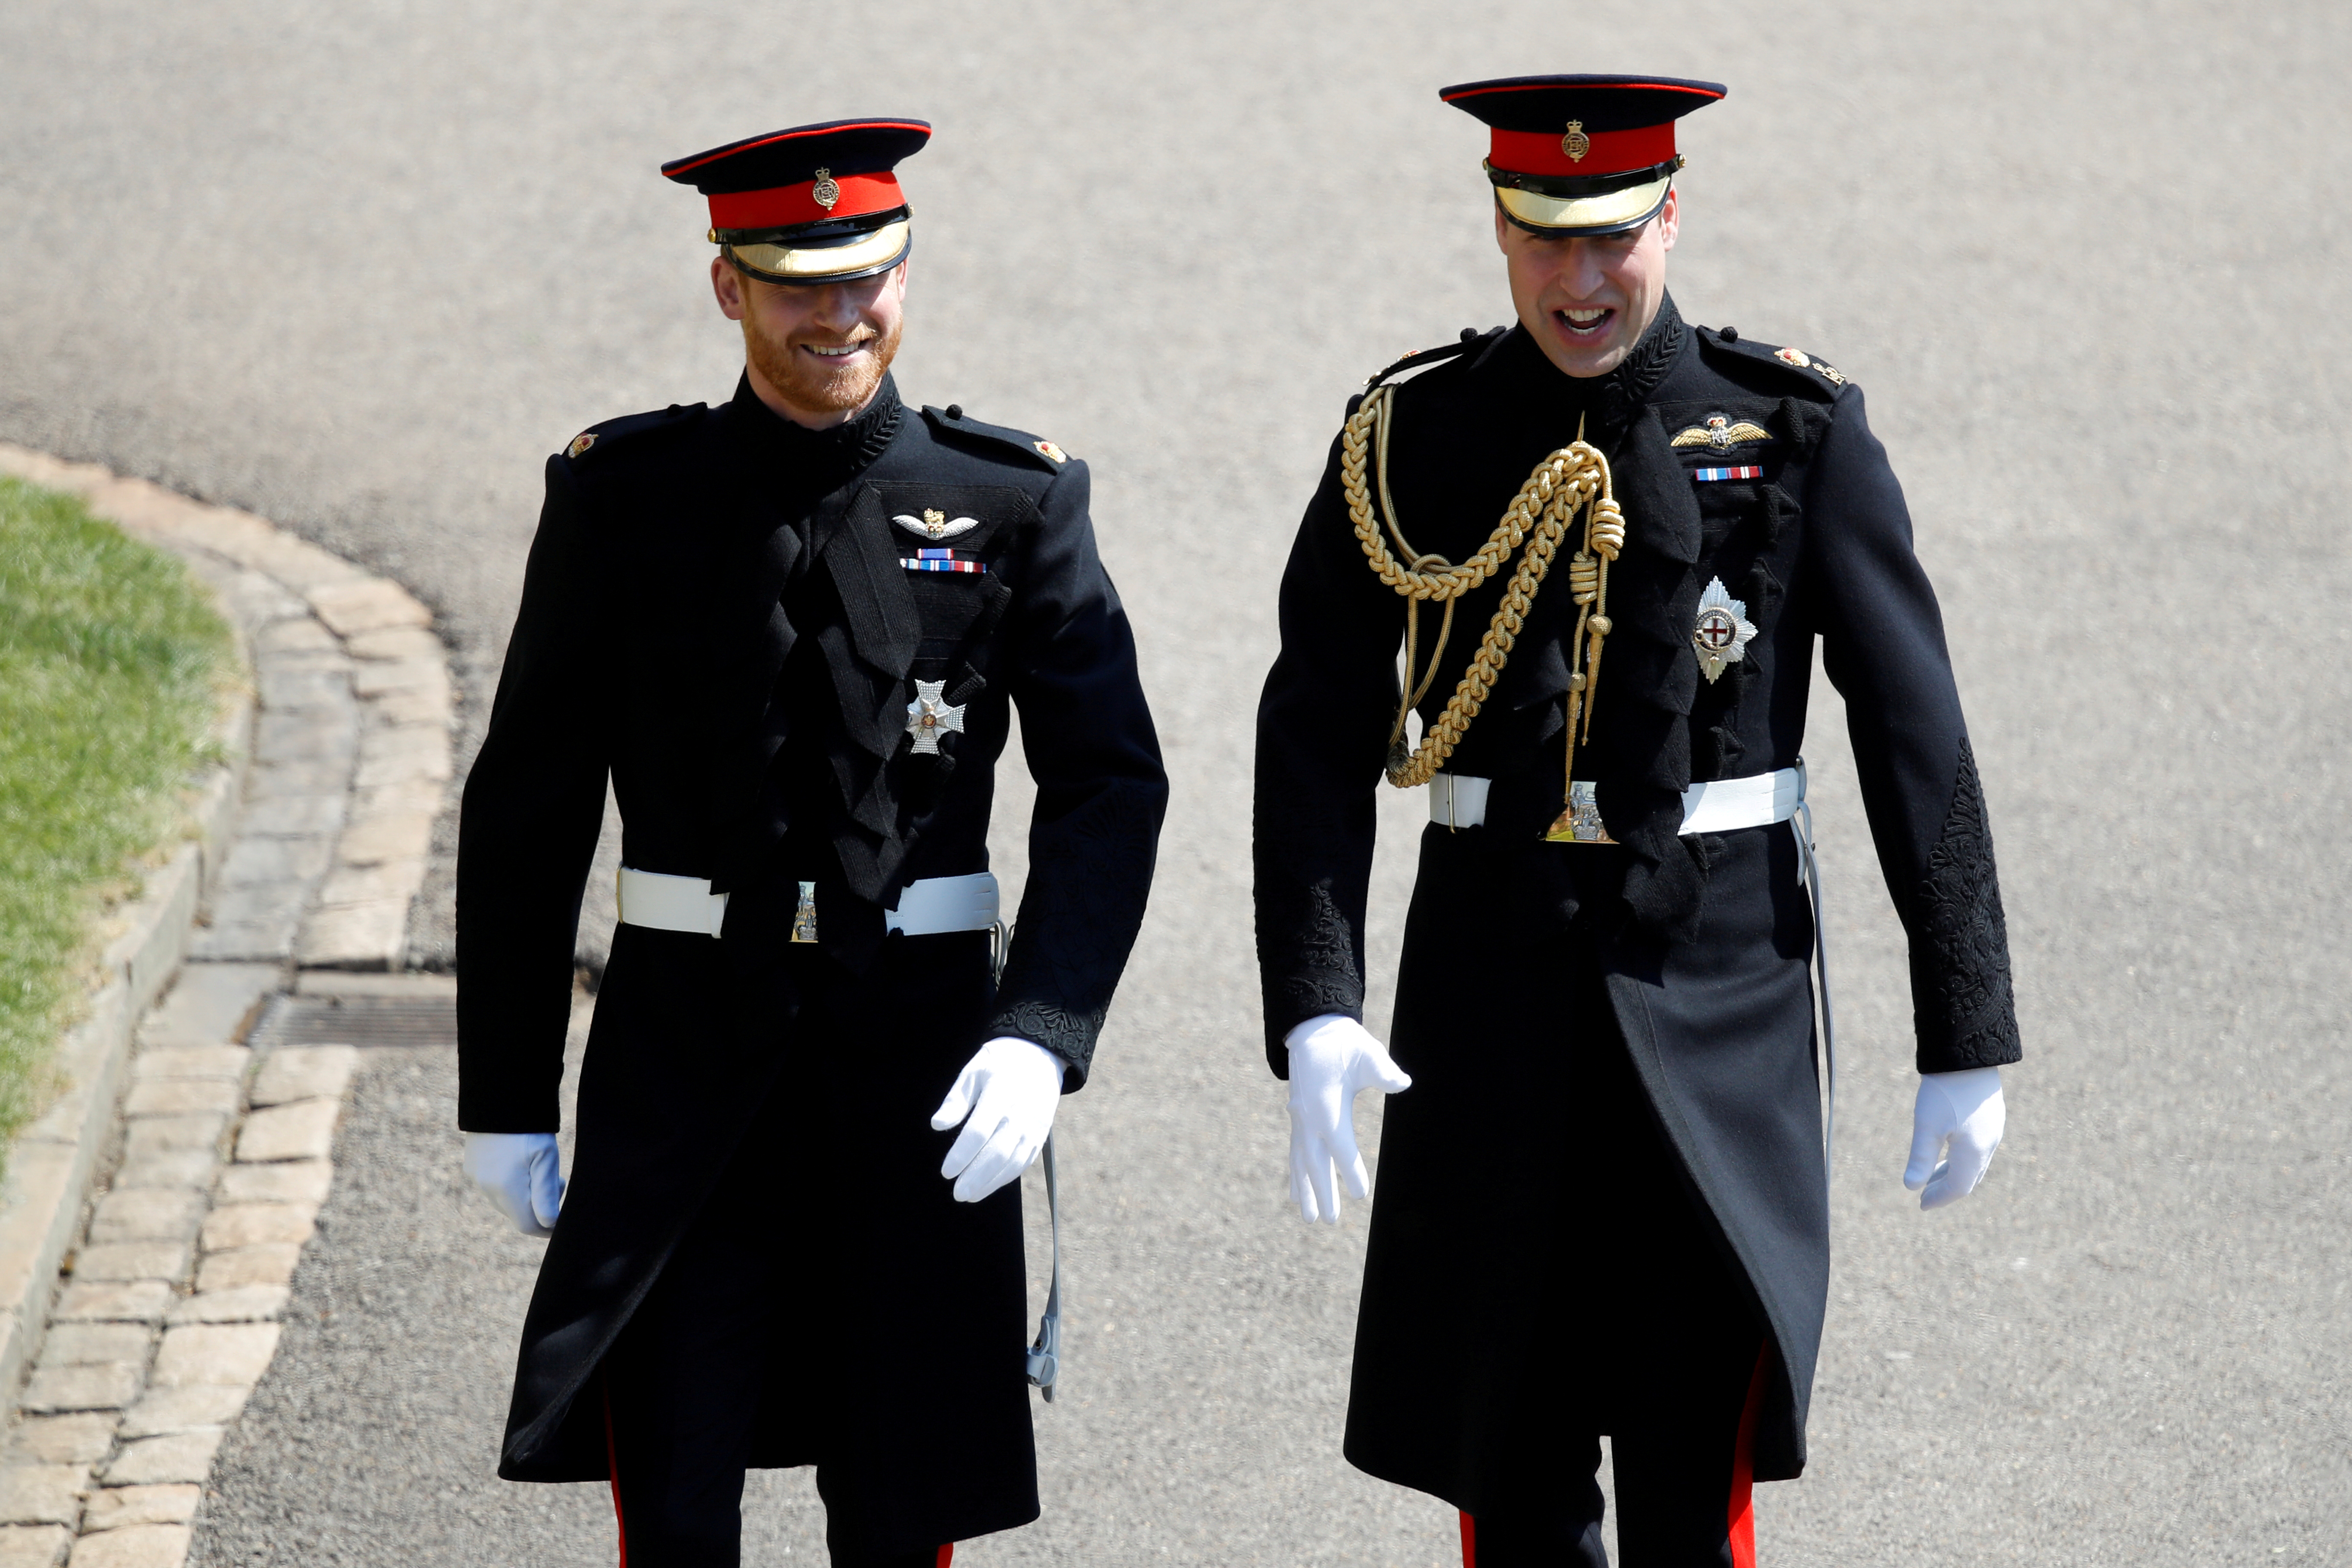 En la boda real de Harry,  el príncipe William con su cordón militar por su rango en las fuerzas armdas